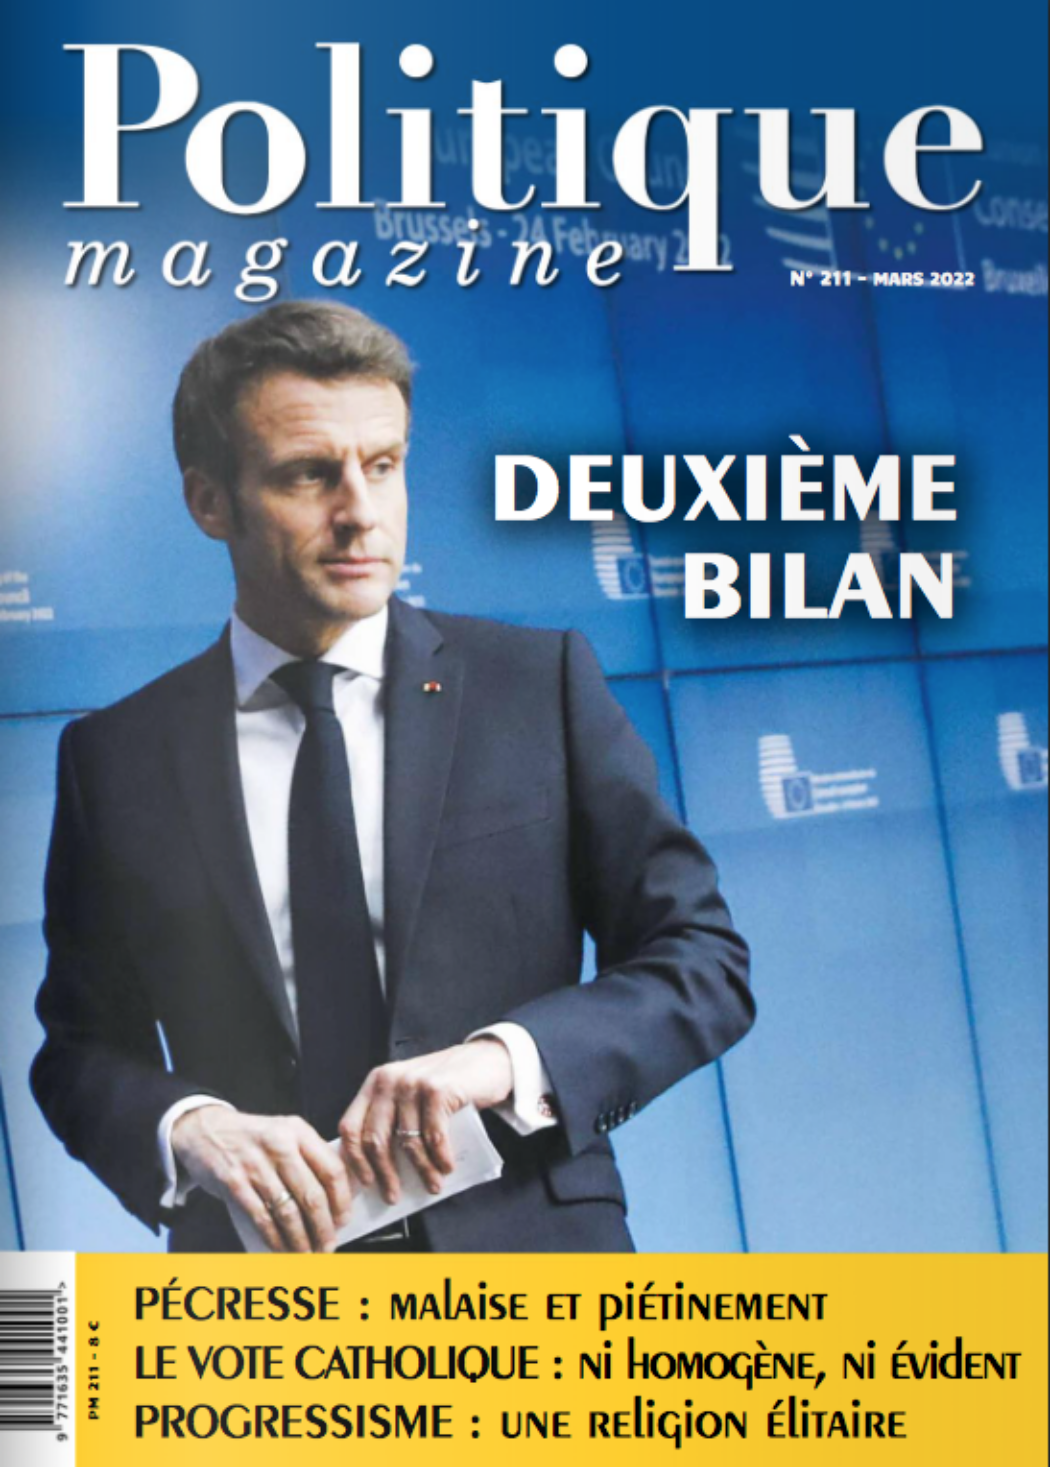 Le quinquennat d’Emmanuel Macron, un recul pour le bien commun